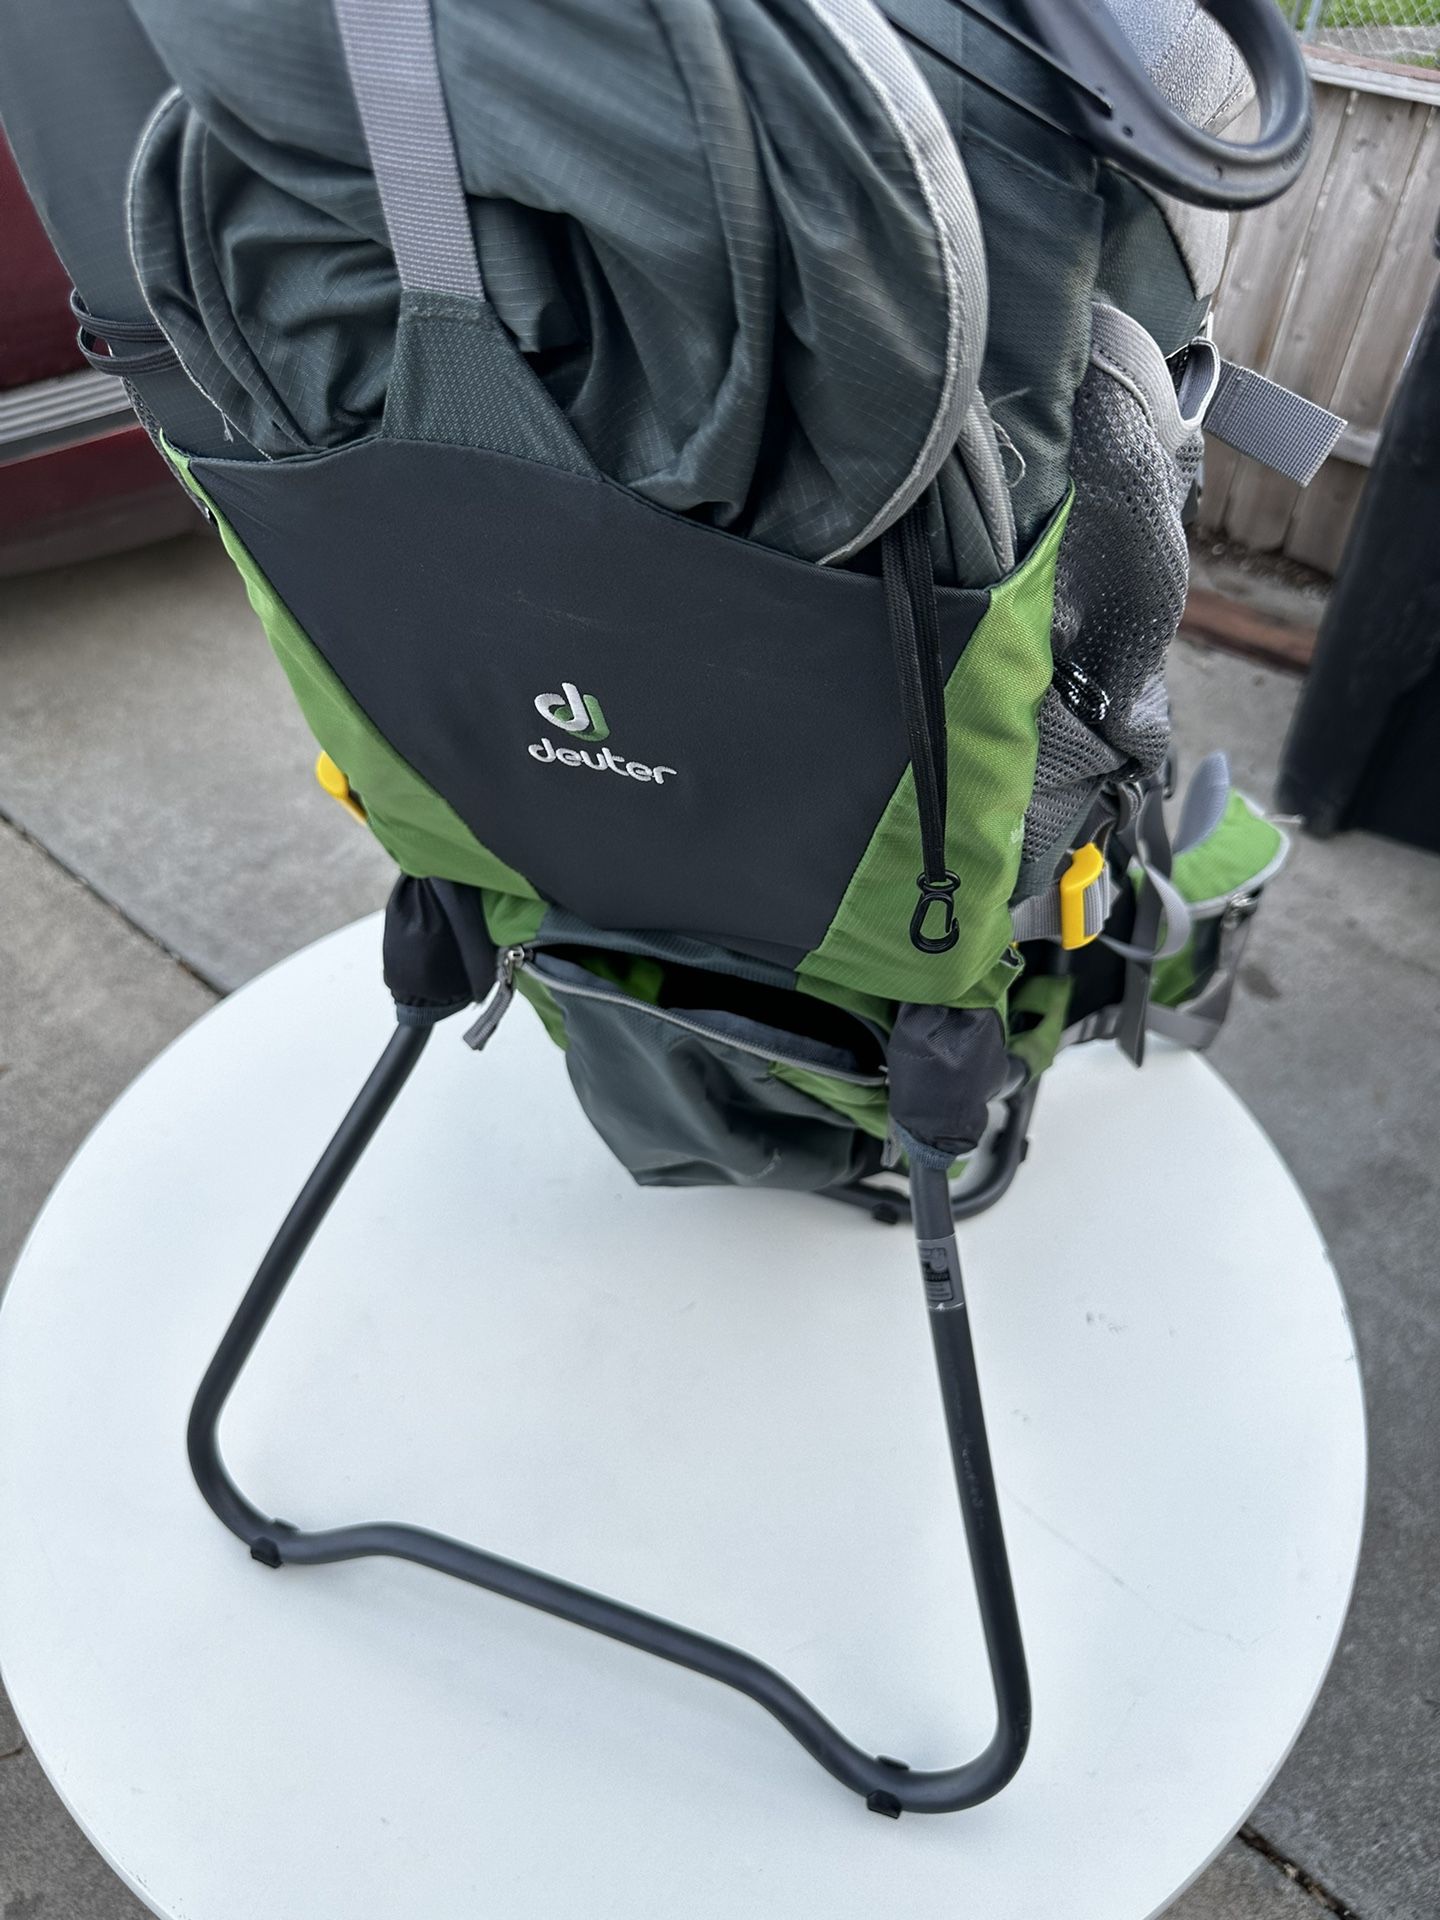 Deuter - Child Backpack Carrier